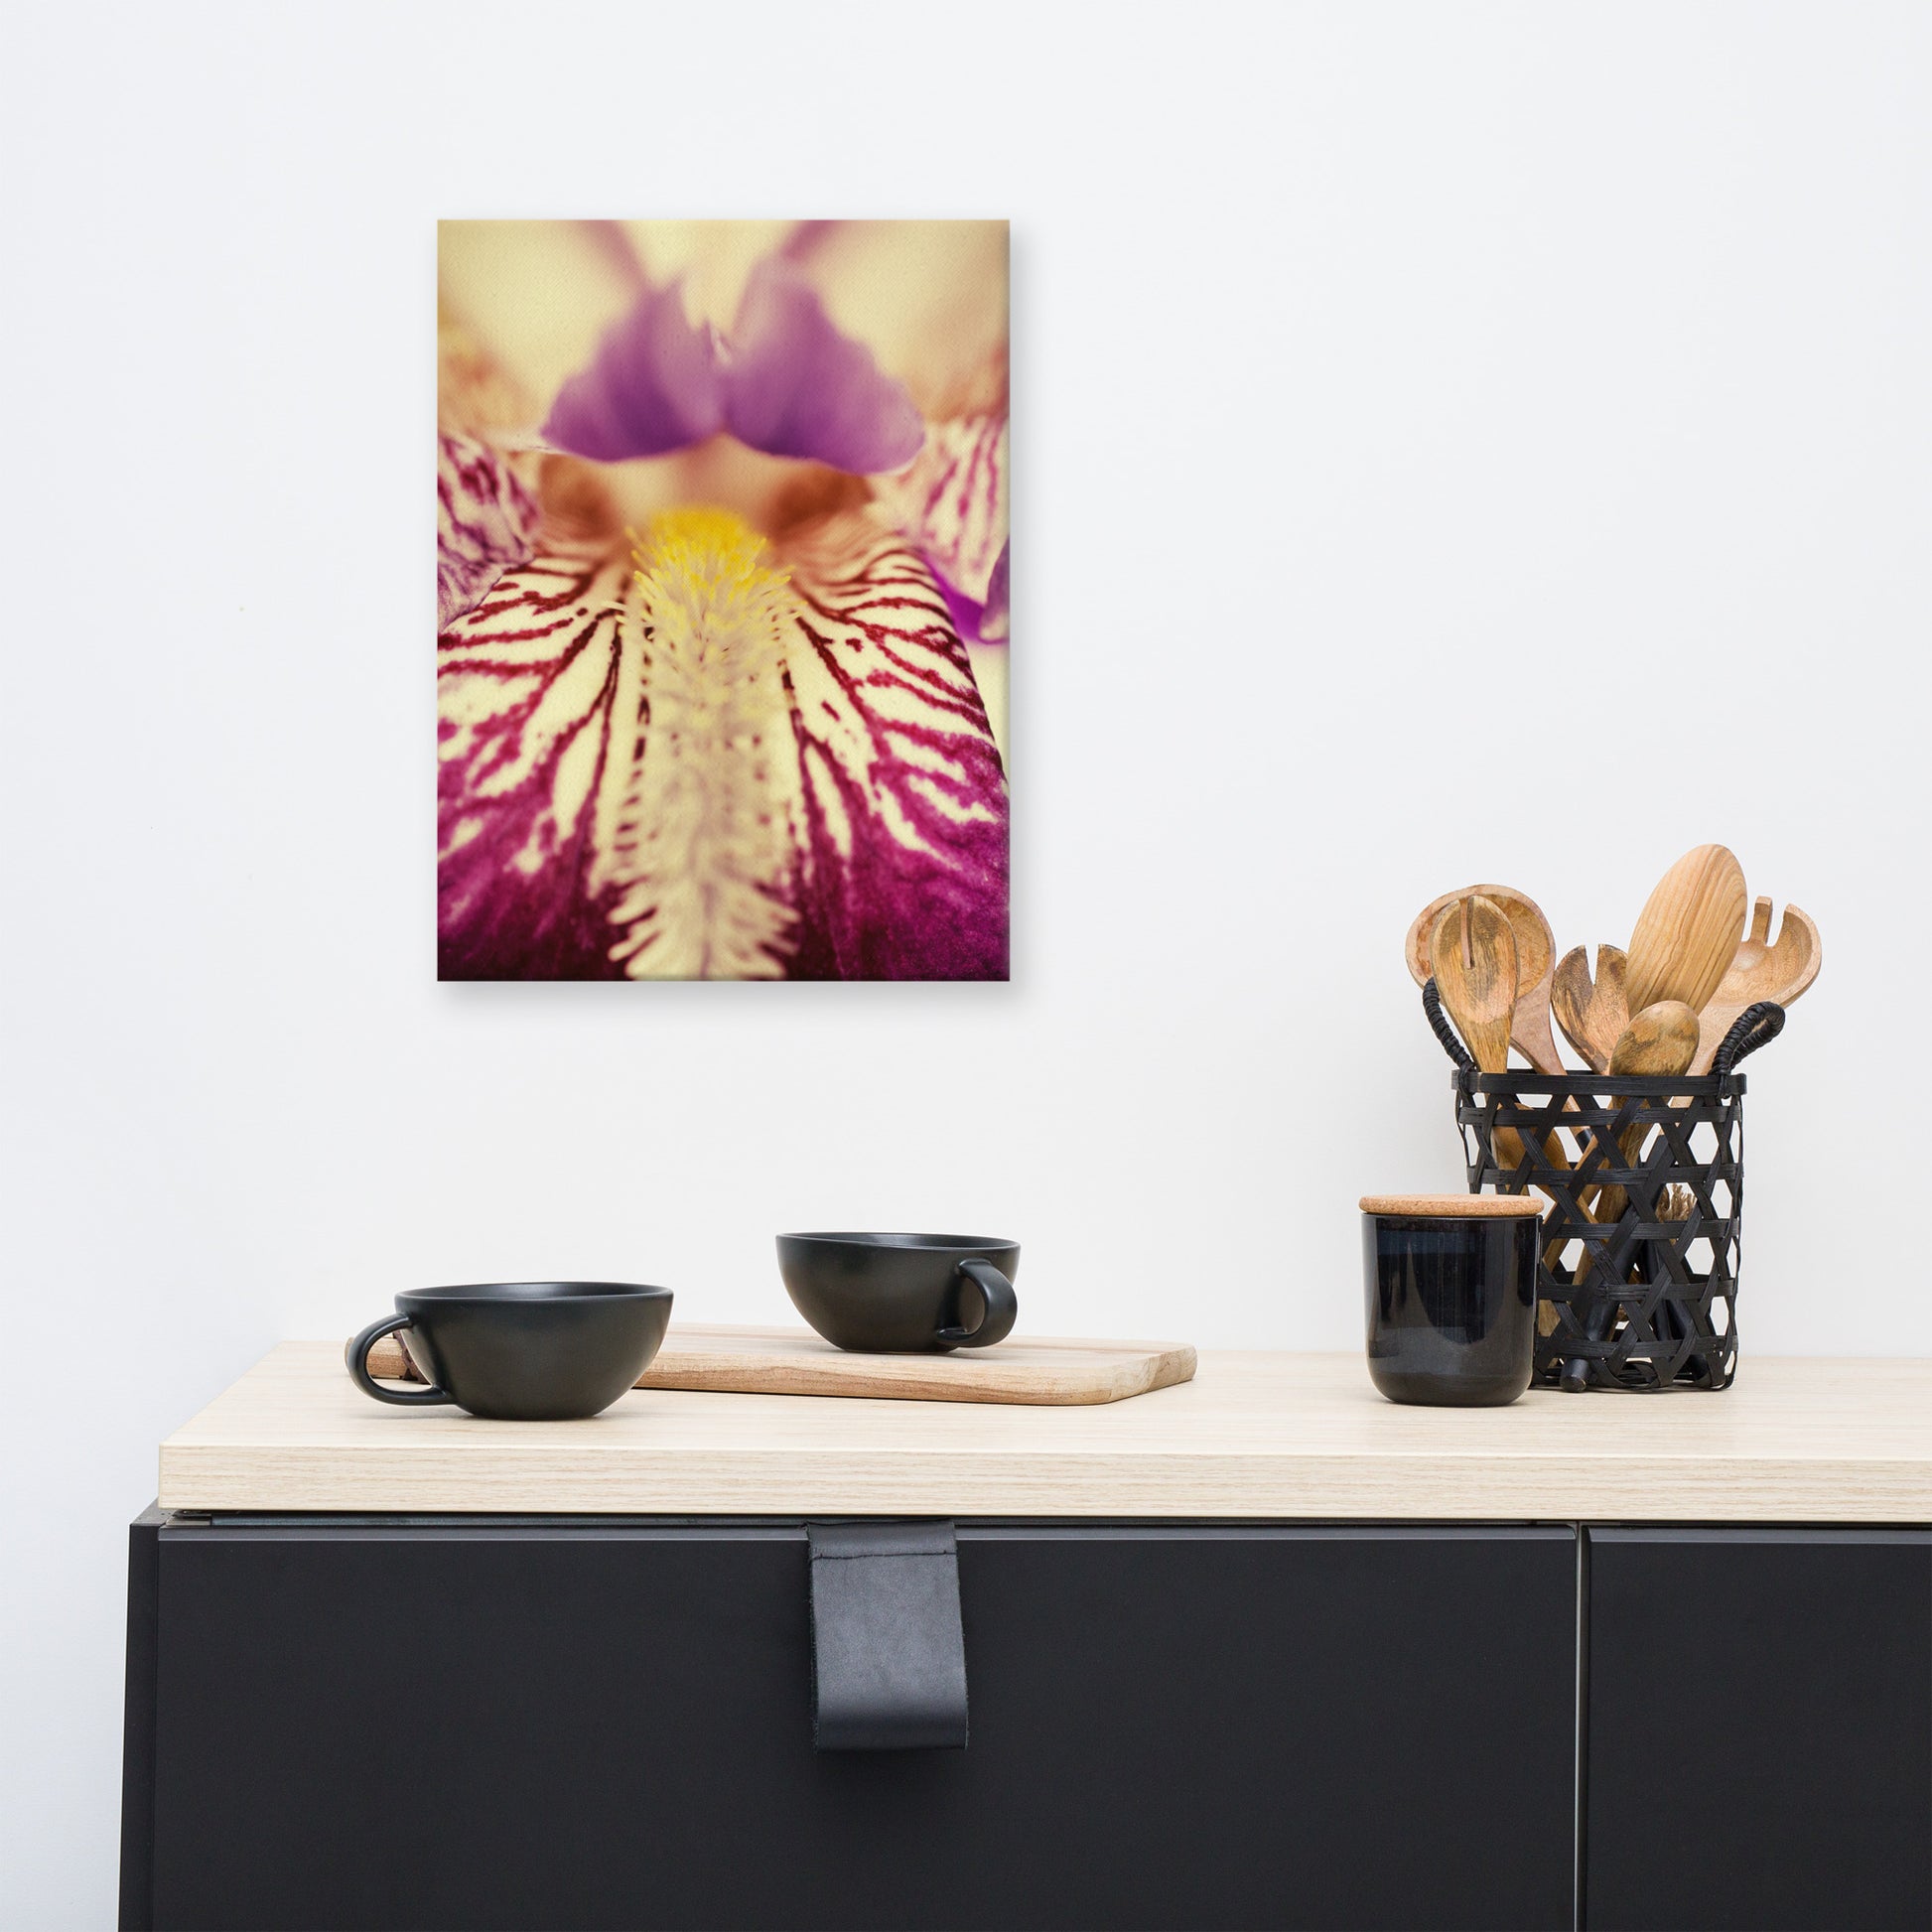 Canvas Floral Pictures: Antiqued Iris - Botanical / Floral / Flora / Flowers / Nature Photograph Canvas Wall Art Print - Artwork